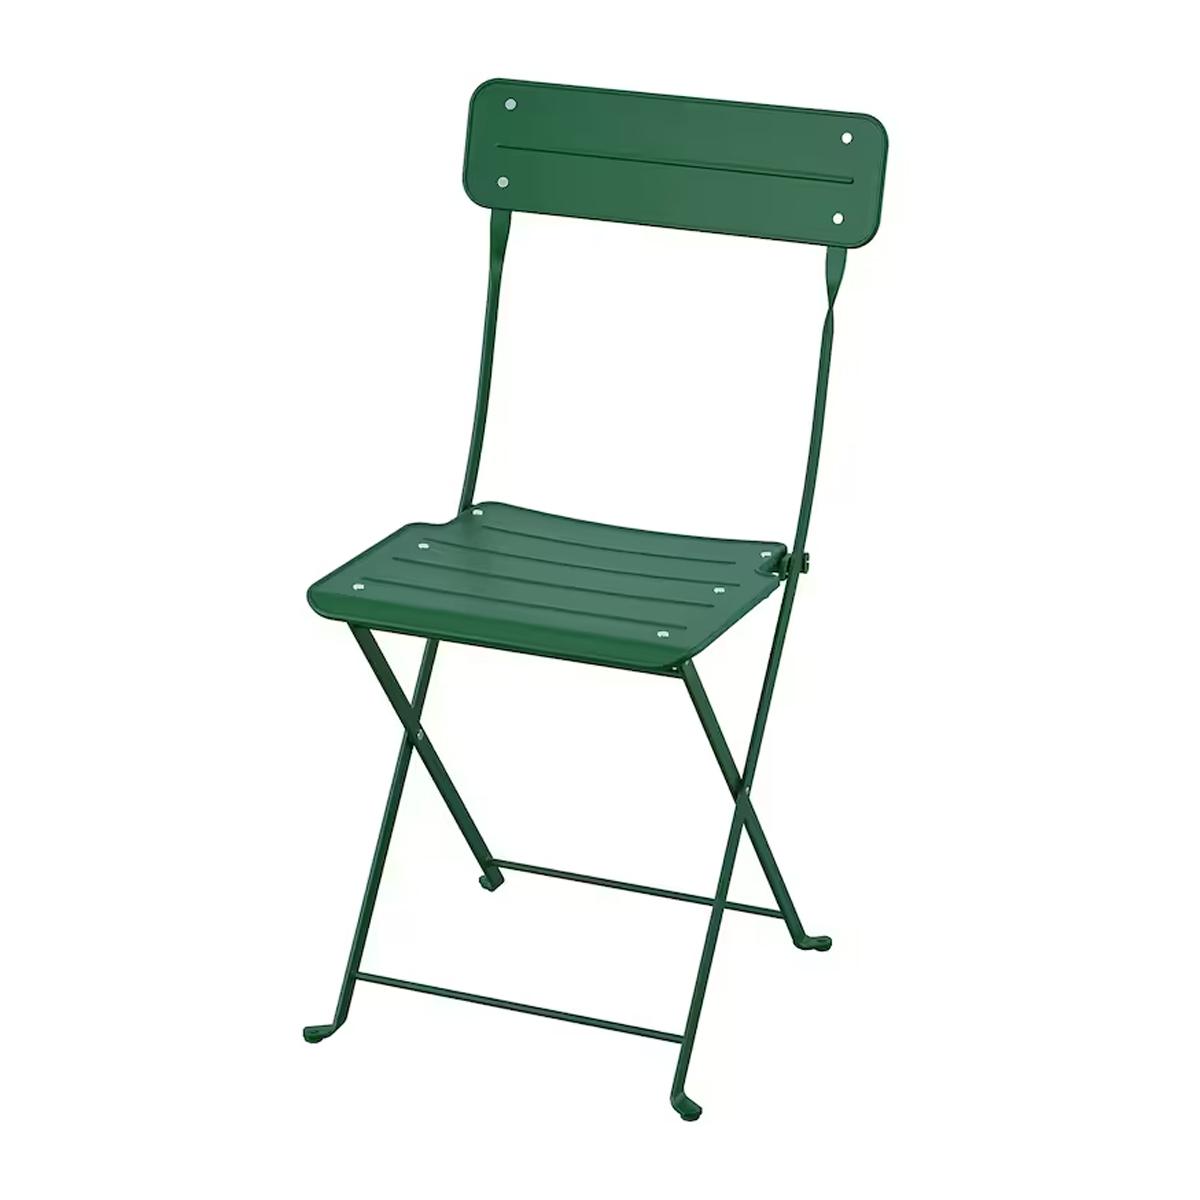 SUNDSO stolica za bastu na rasklapanje, zelena